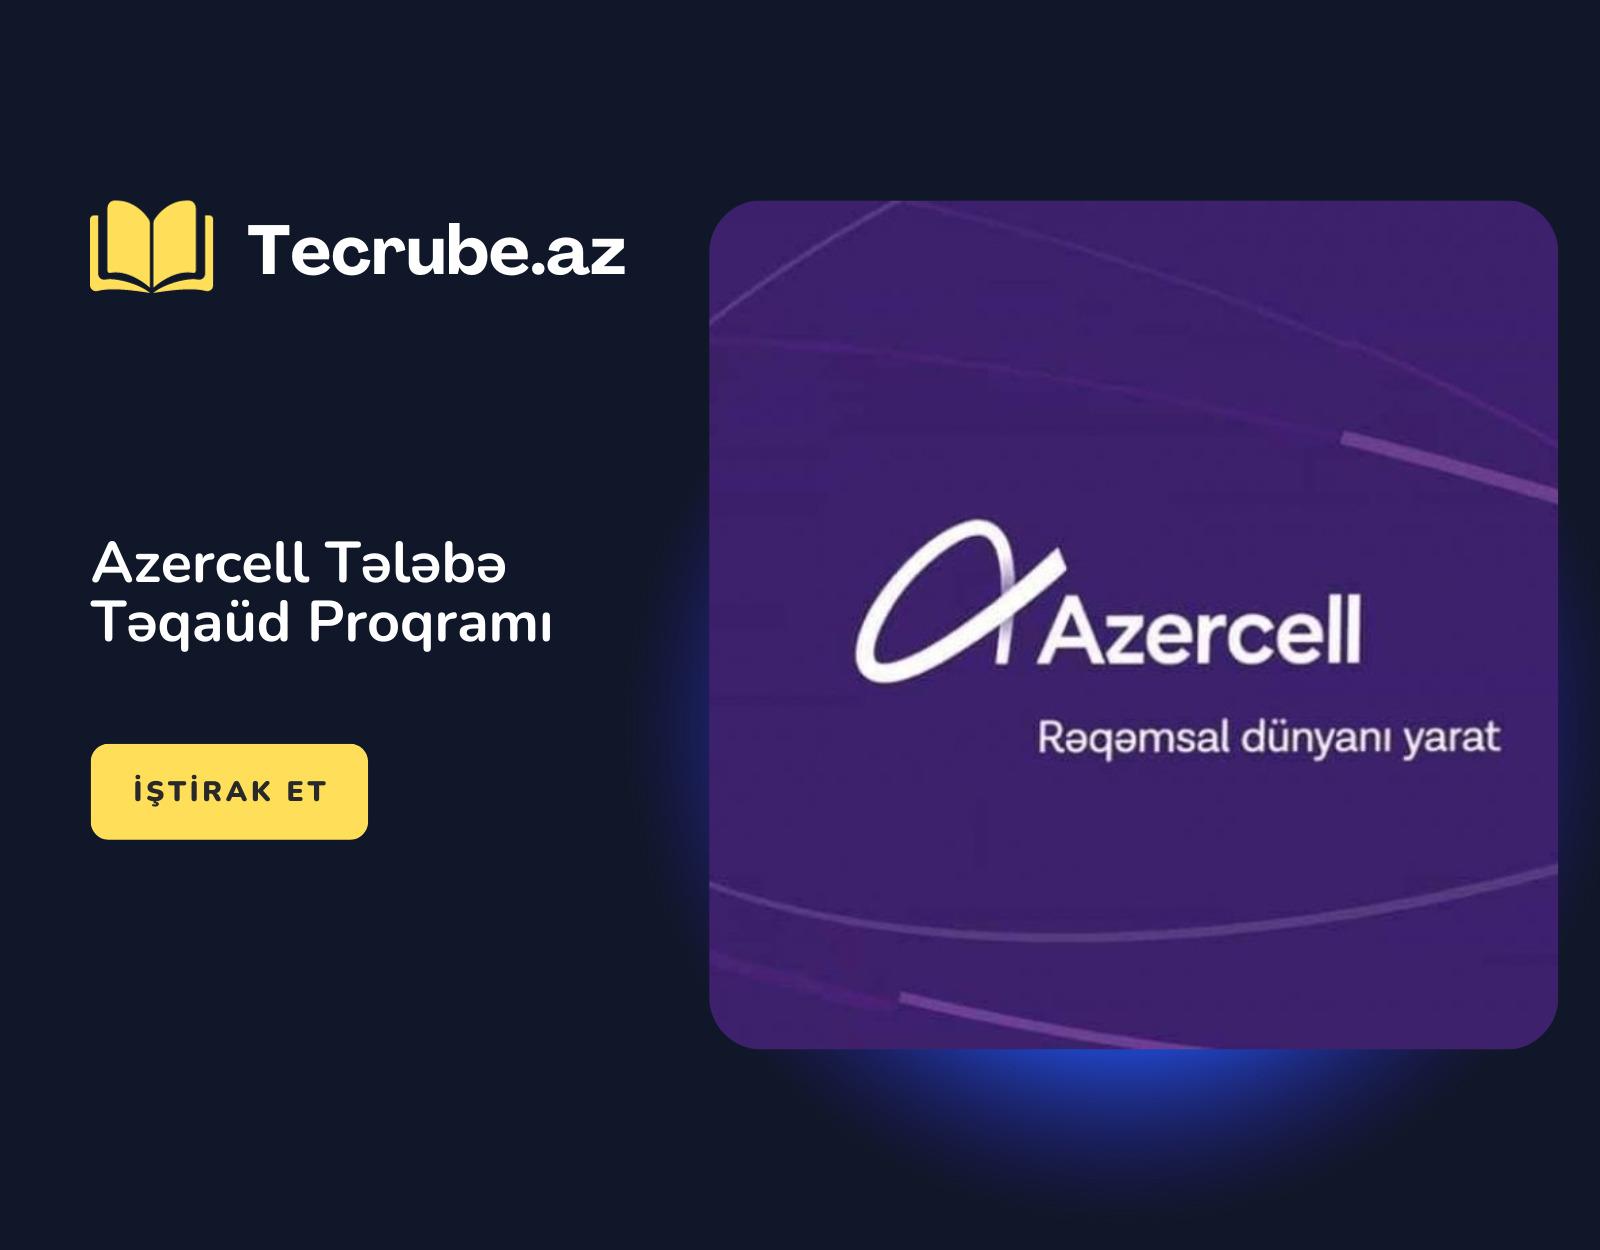 Azercell Tələbə Təqaüd Proqramı